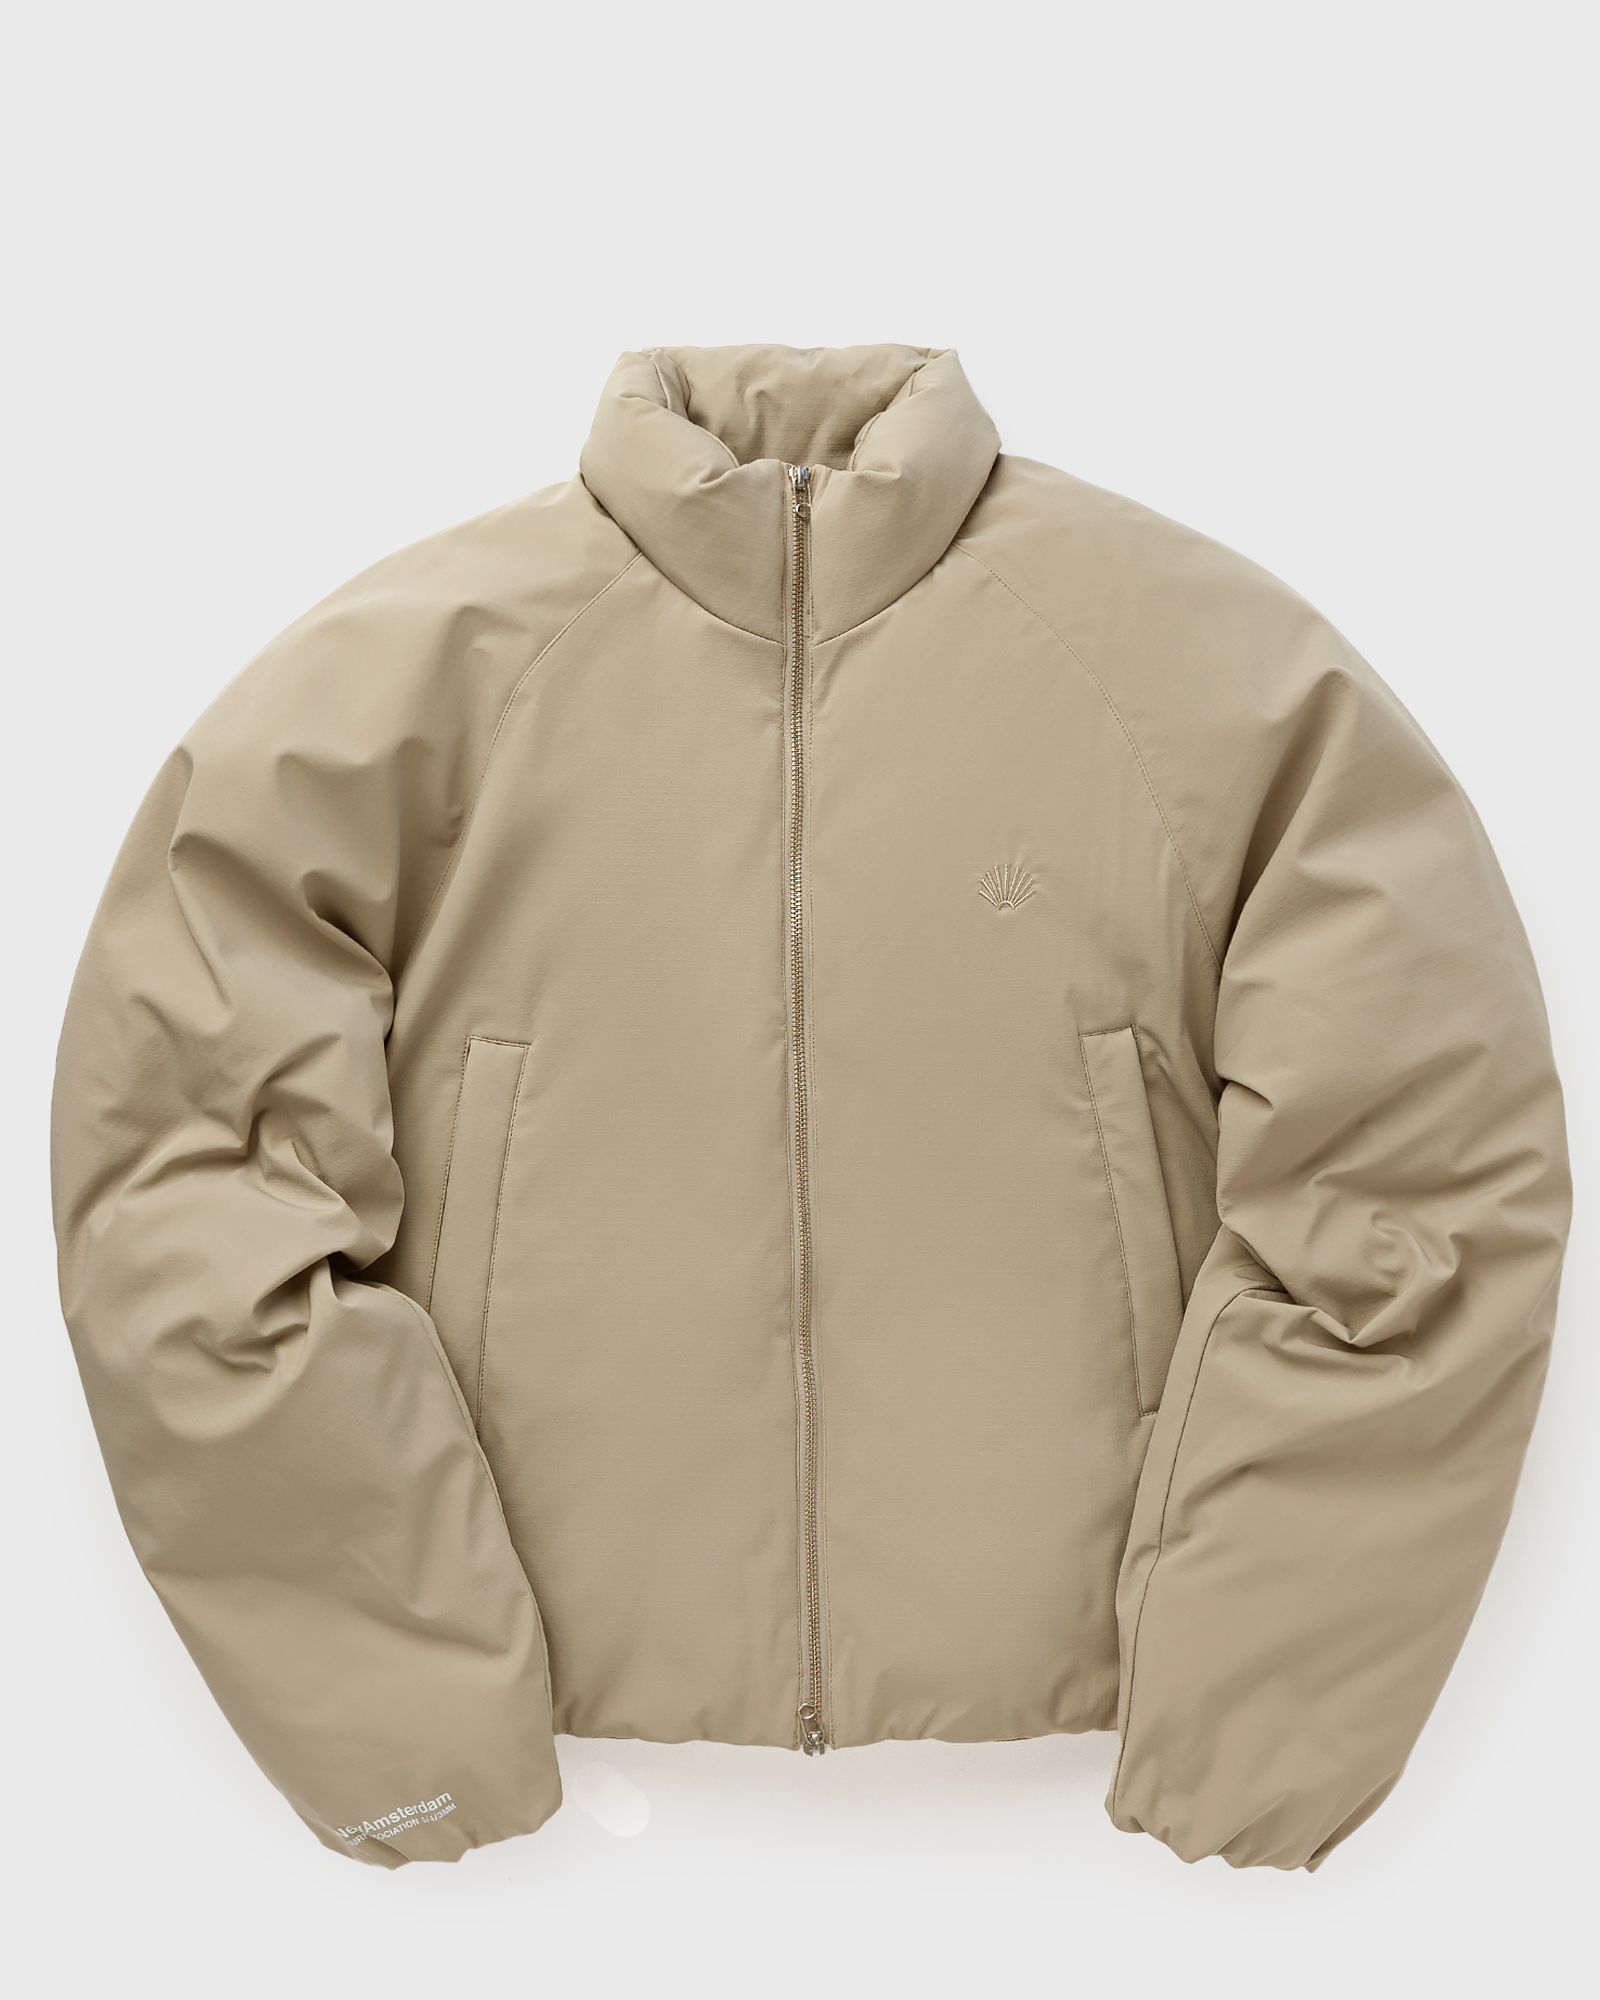 New Amsterdam - safety jacket men down & puffer jackets brown in größe:m